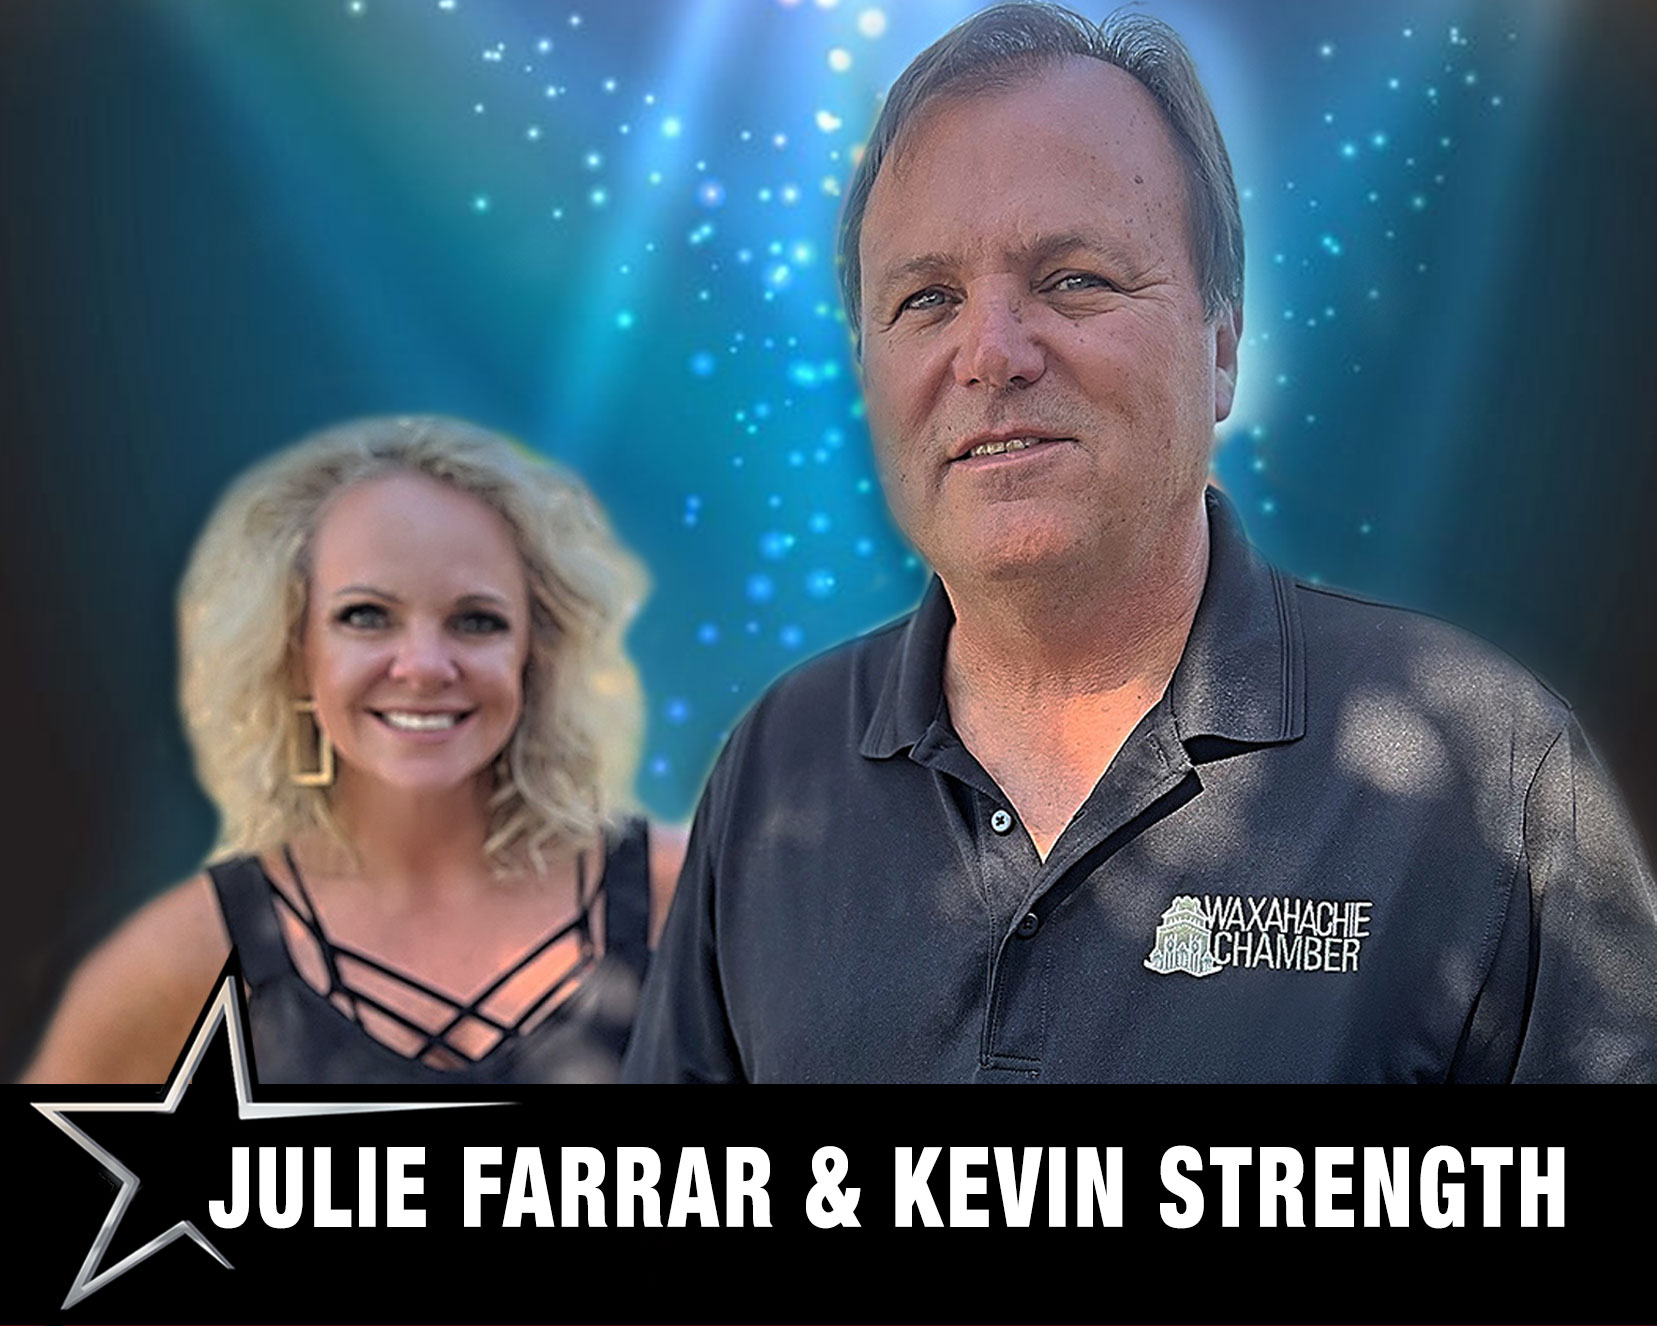 Julie Farrar & Kevin Strength